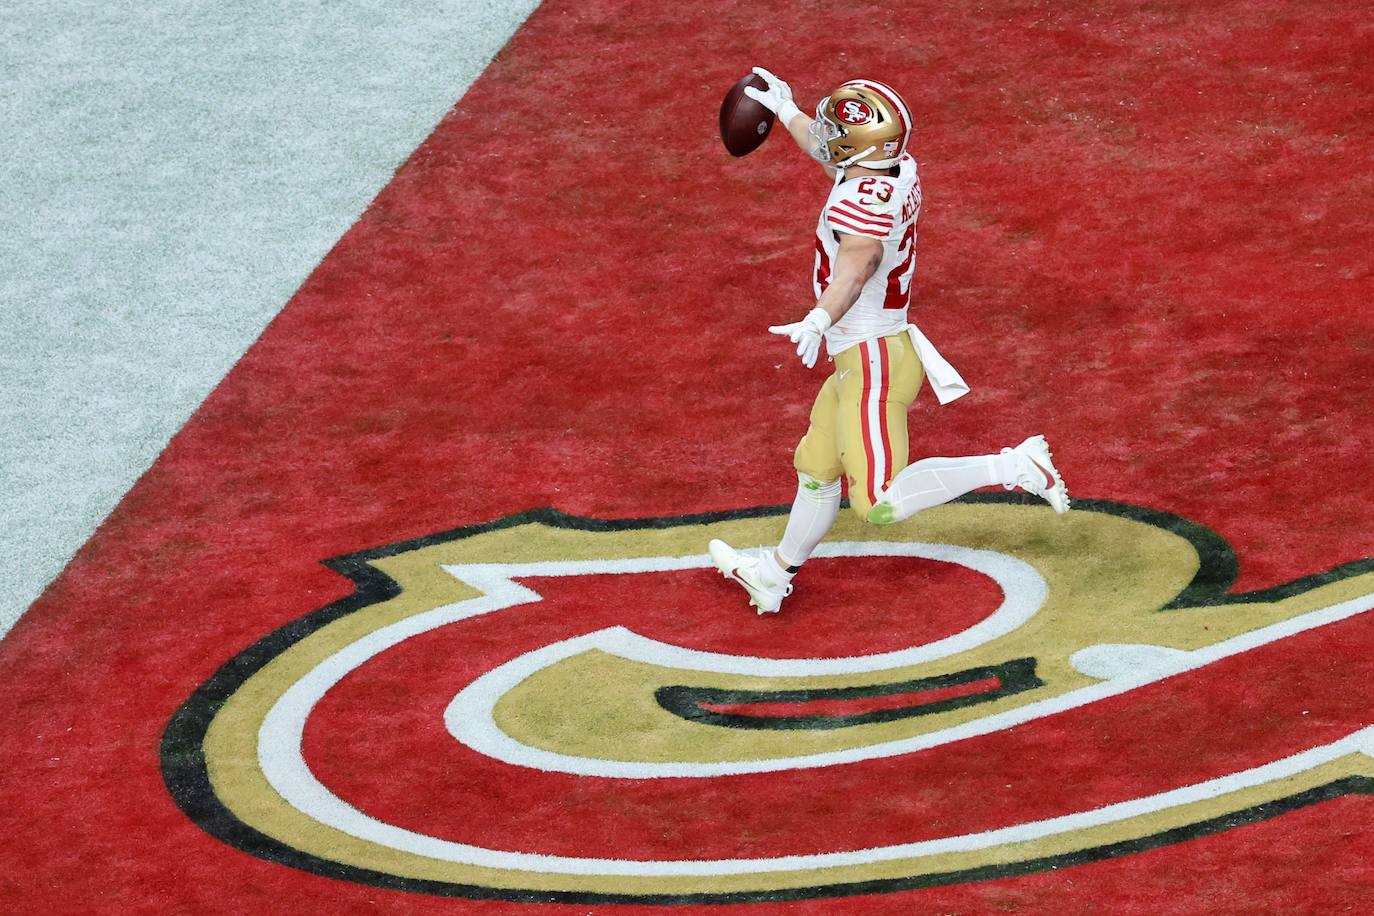 Christian McCaffrey, jugador ofensivo del año, firmó el primer touchdown para poner 10-0 por delante a los San Francisco 49ers a falta de 4:23 para el descanso.